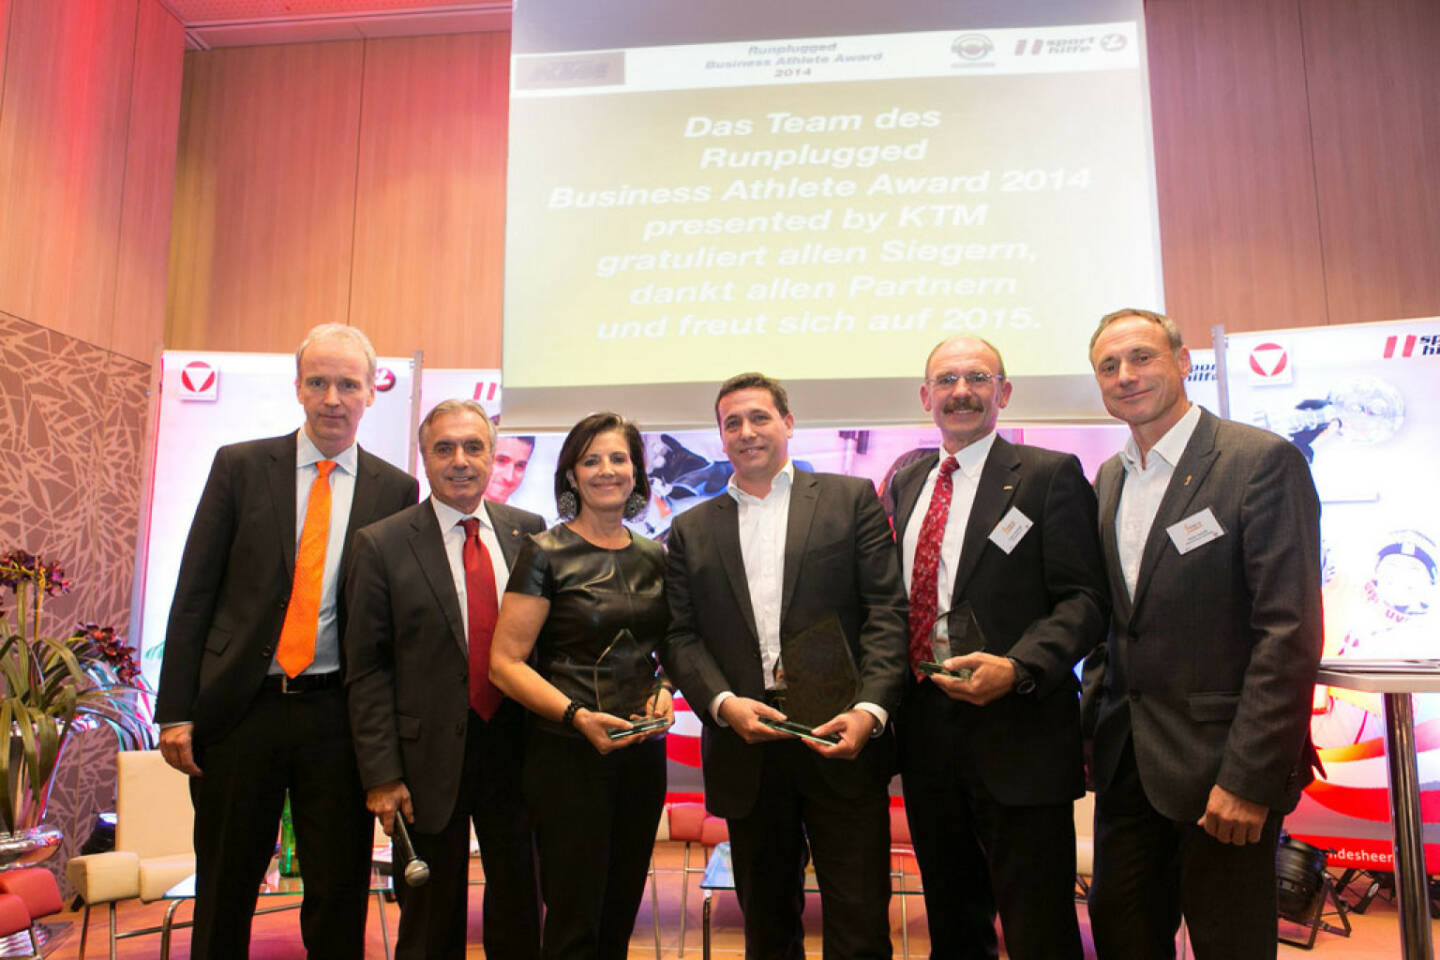 2014: Christian Drastil, Hans Huber, Romy Faisst (Business Circle, Platz 2), Rene Berger (Toto Wolff, Platz 1), Franz Gschiegl (Erste Sparinvest, Platz 3), Toni Schutti (Österreichische Sporthilfe)